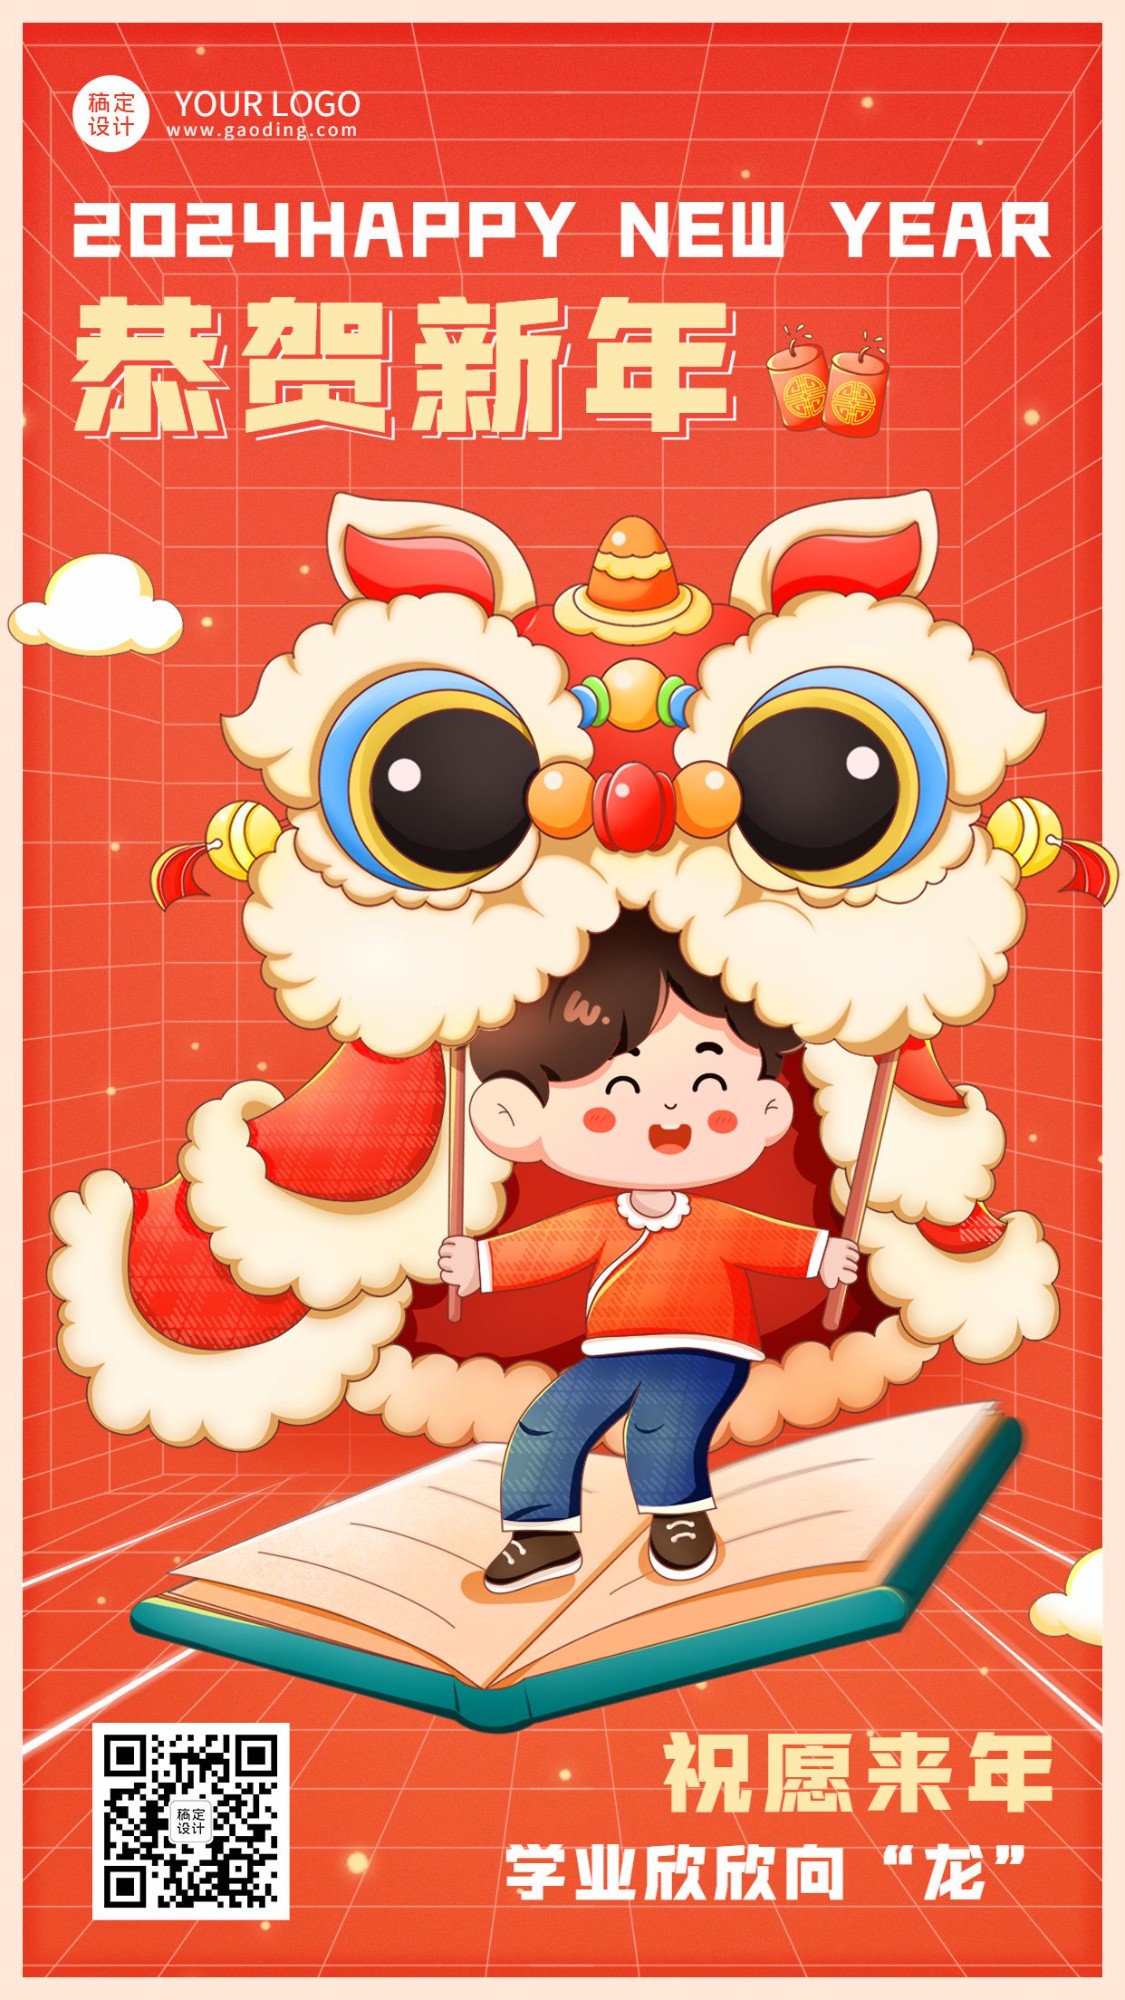 春节祝福教育培训新年祝福拜年插画风格手机海报预览效果